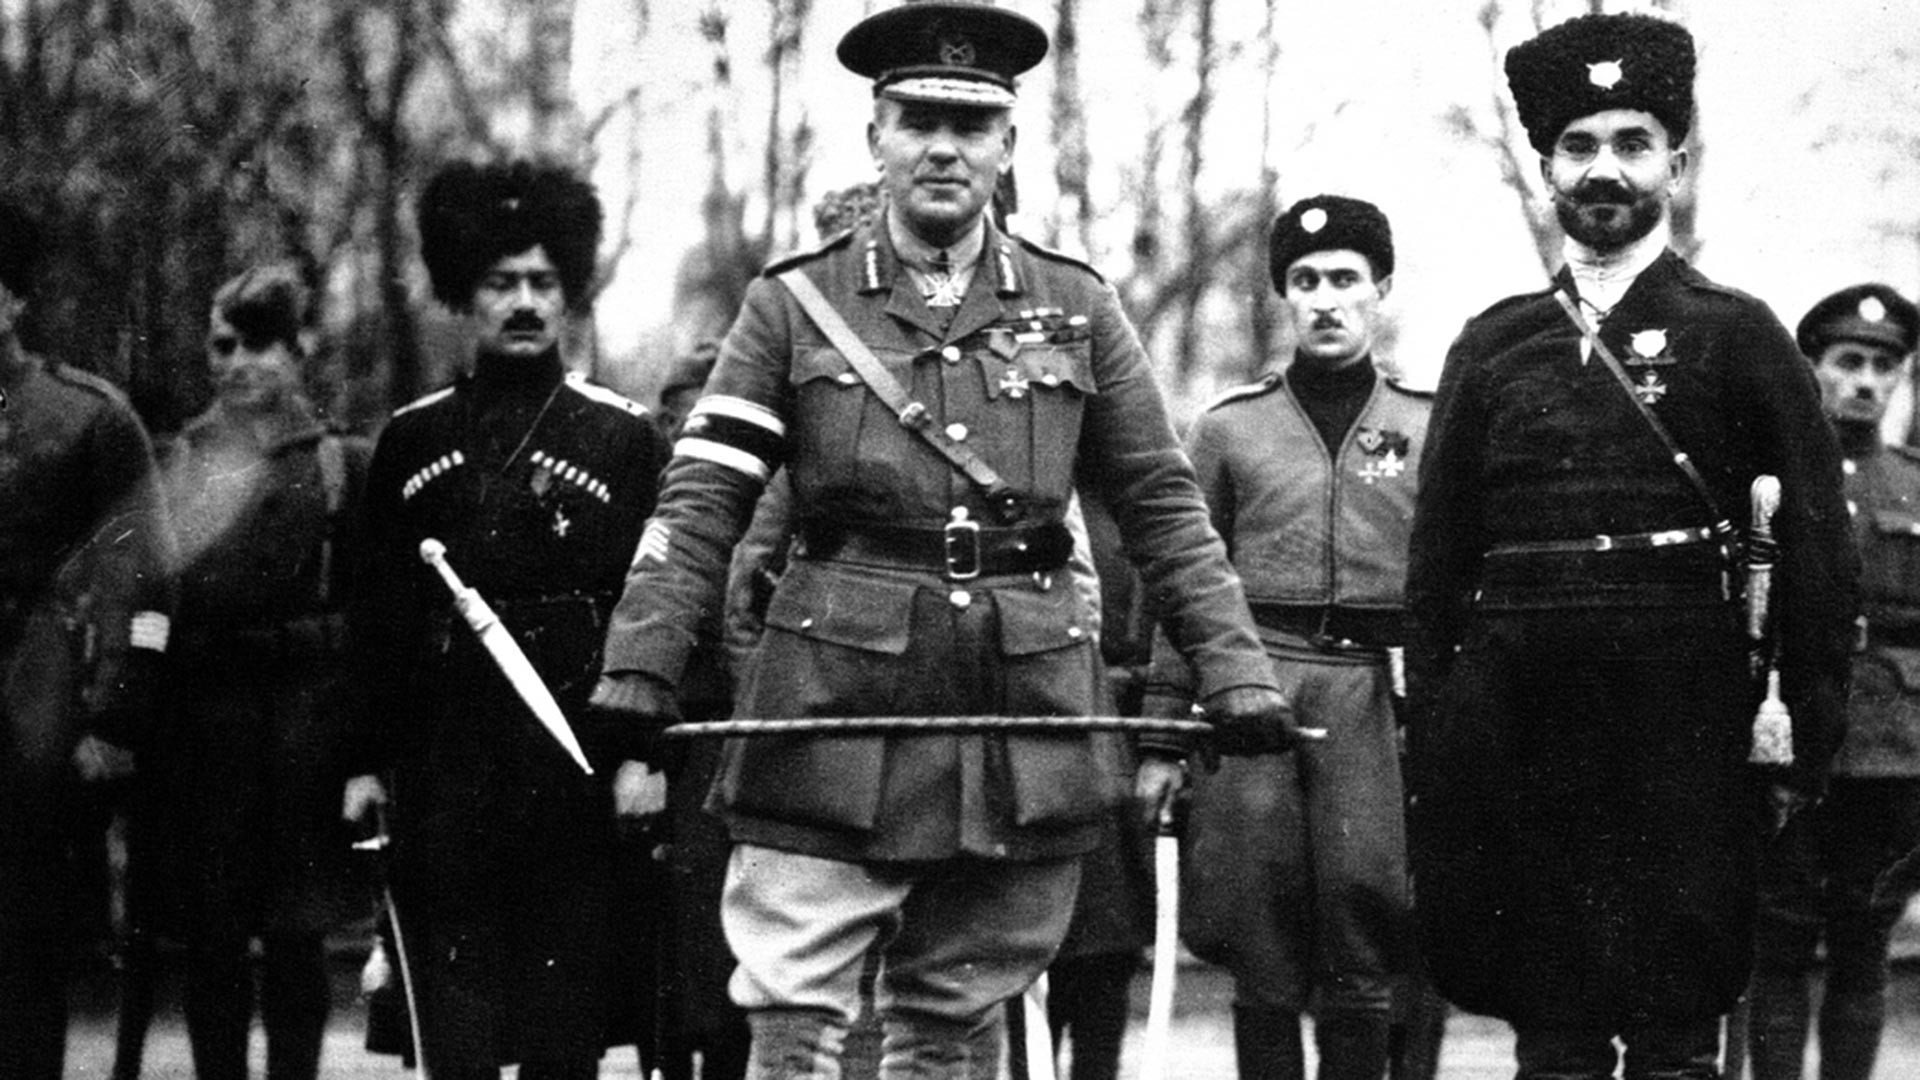 Britanski generalmajor Frederick Poole, ki je poveljeval zavezniškim silam v Arhangelsku do oktobra 1918 skupaj s kozaki. Kasneje je bil premeščen k belim silam na jug Rusije.